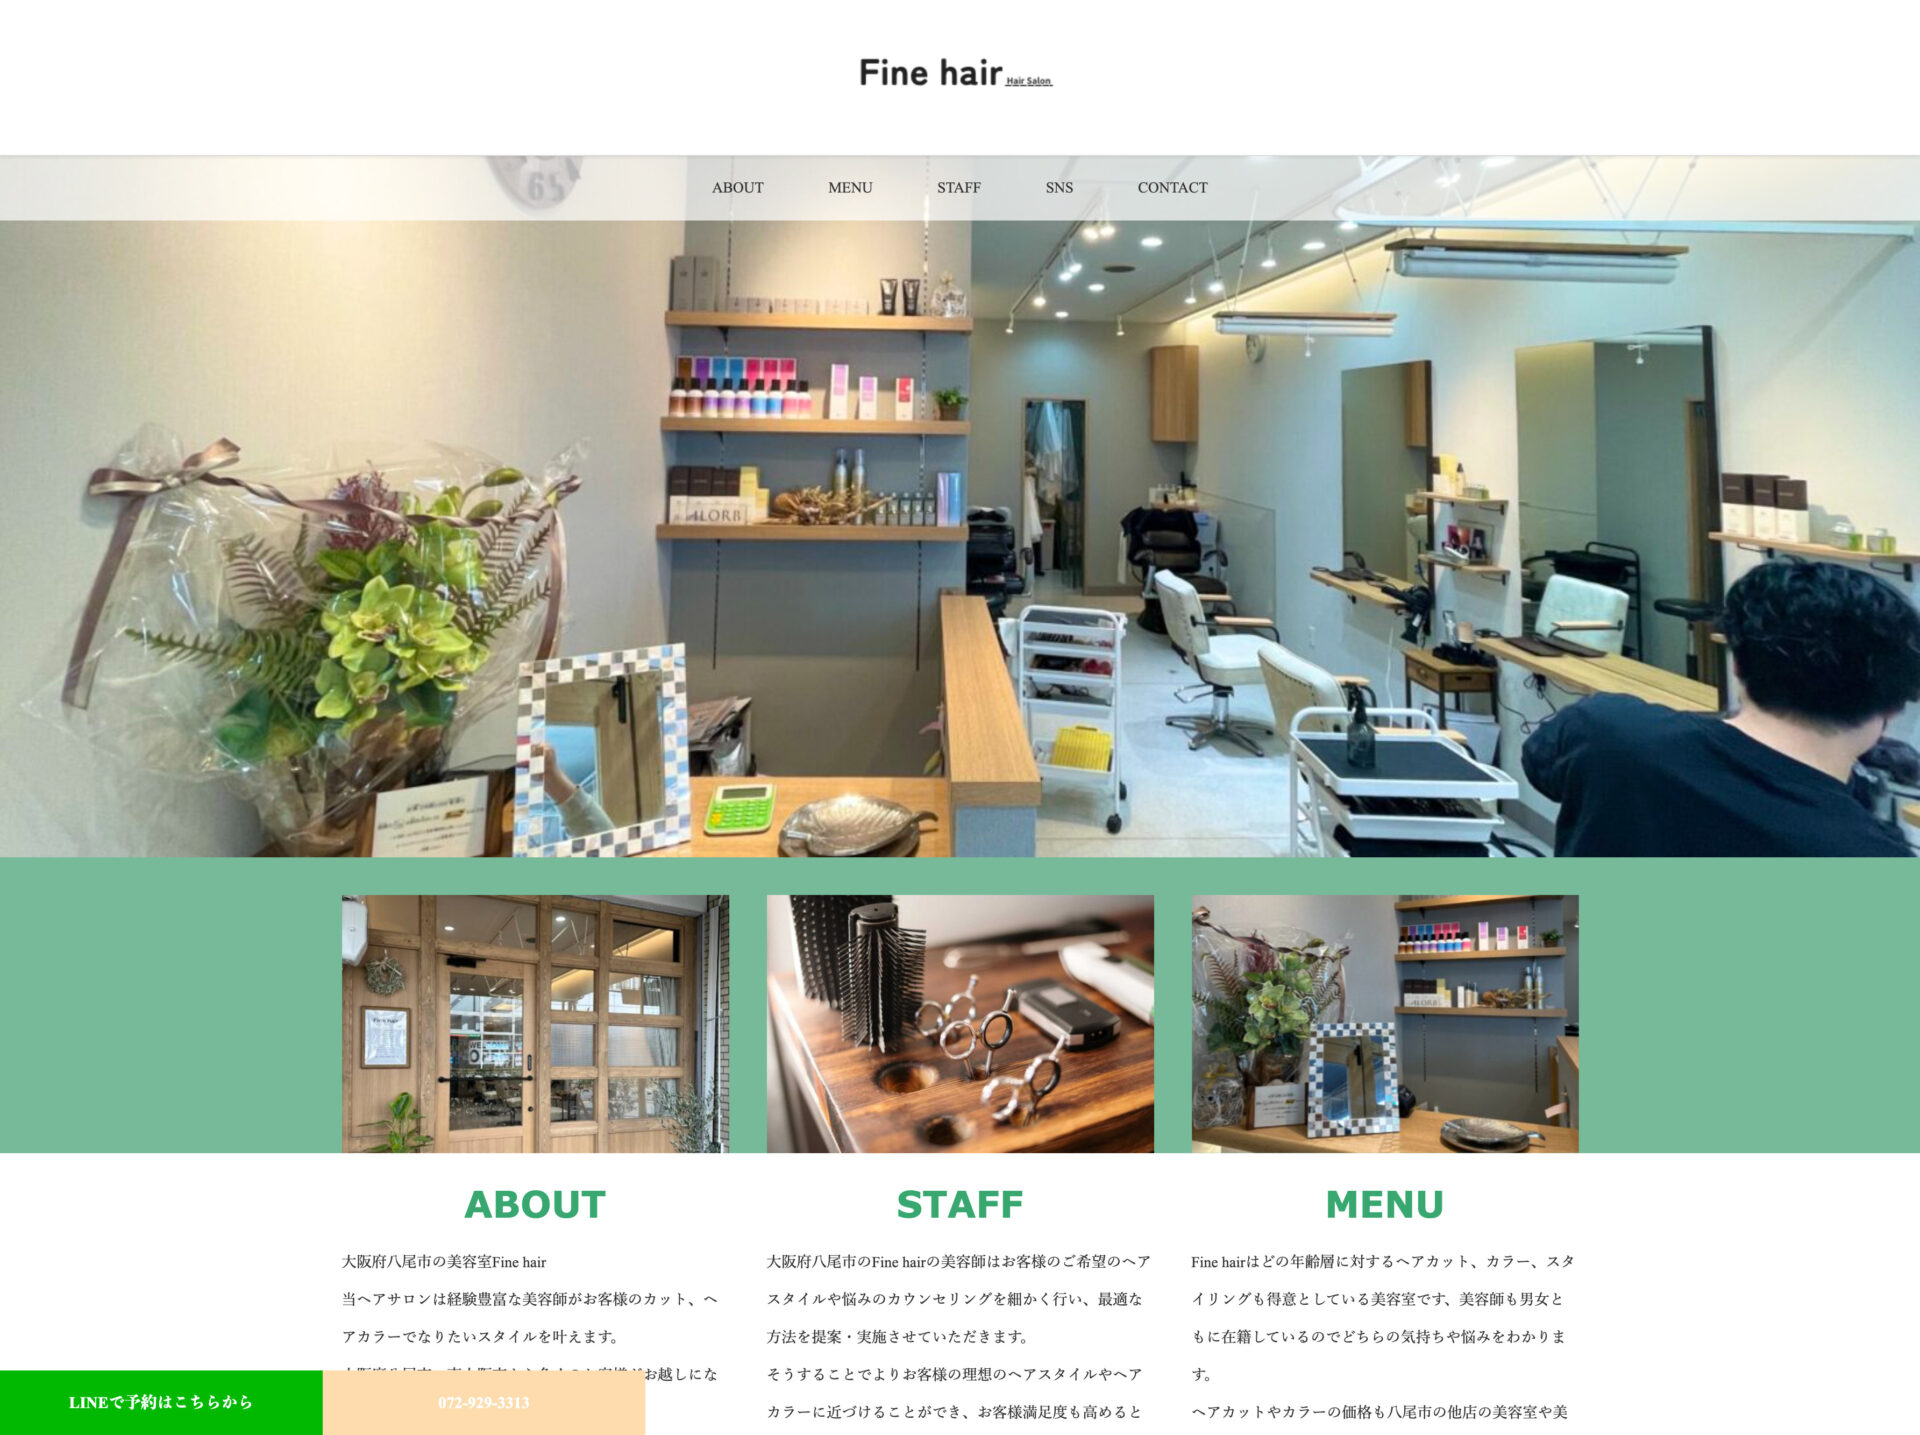 大阪府八尾市の美容室fine hair様のホームページ